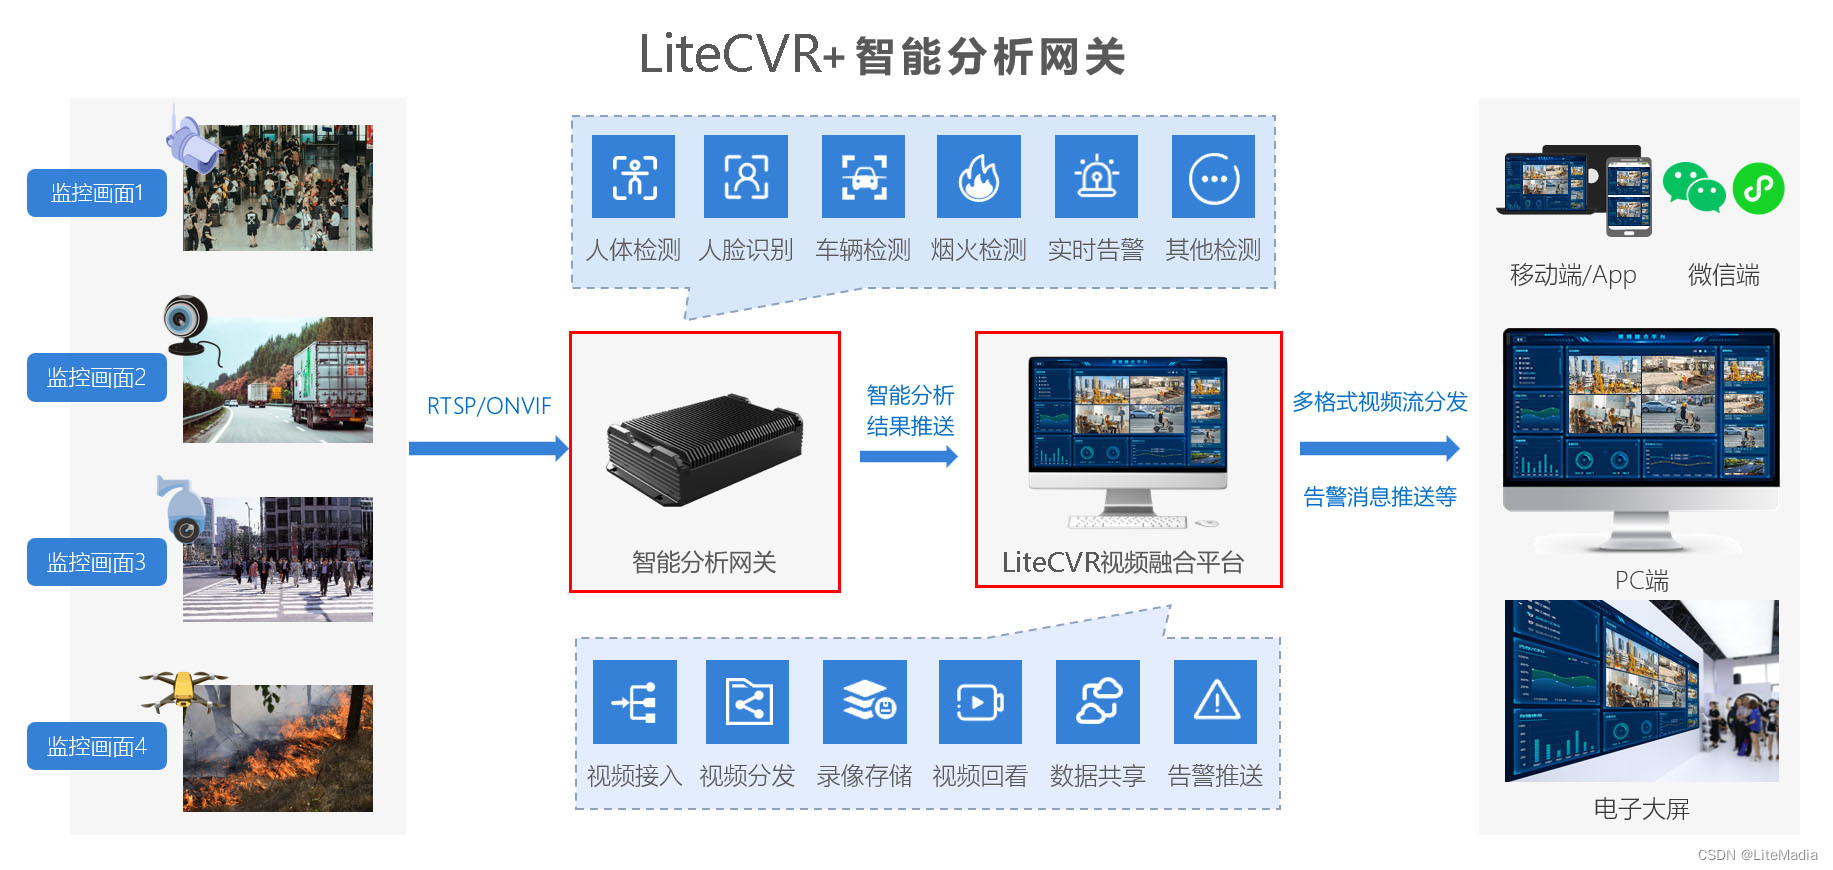 国标GB28181视频平台LiteCVR视频汇聚平台在国标设备接入时如何过滤通道类型_智能路由器